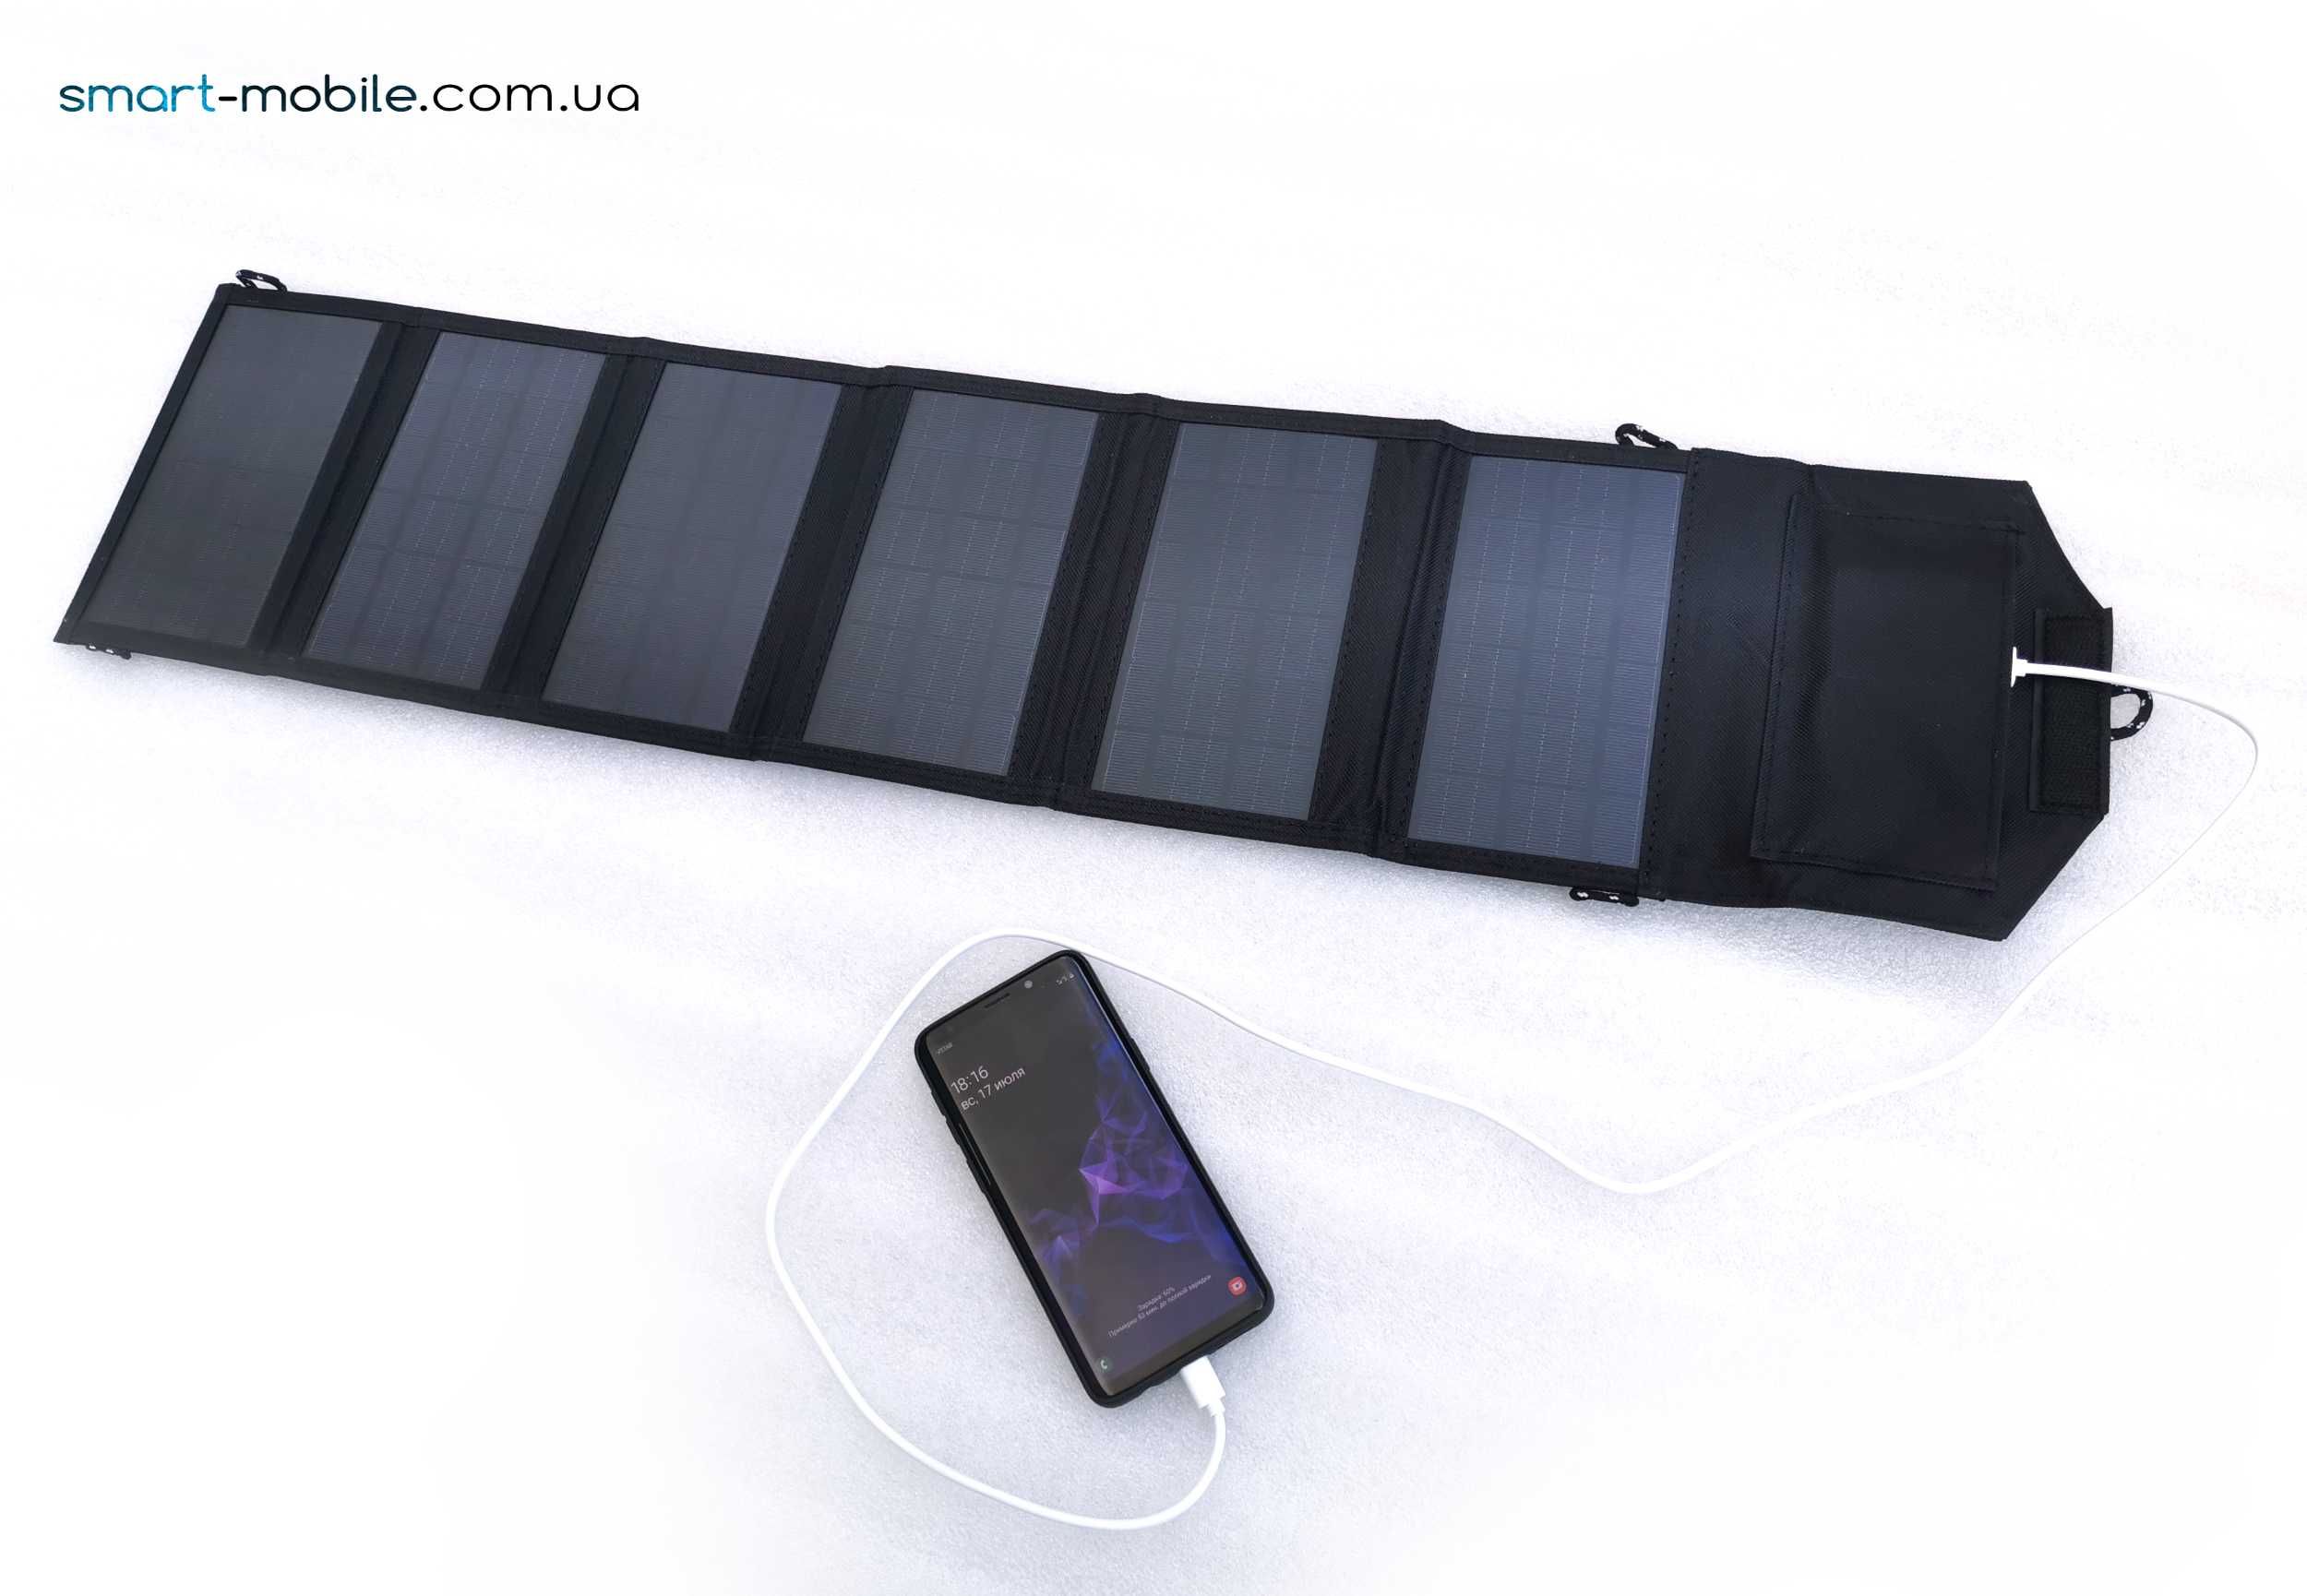 Солнечная портативная панель 30Вт - солнечная зарядка для телефона